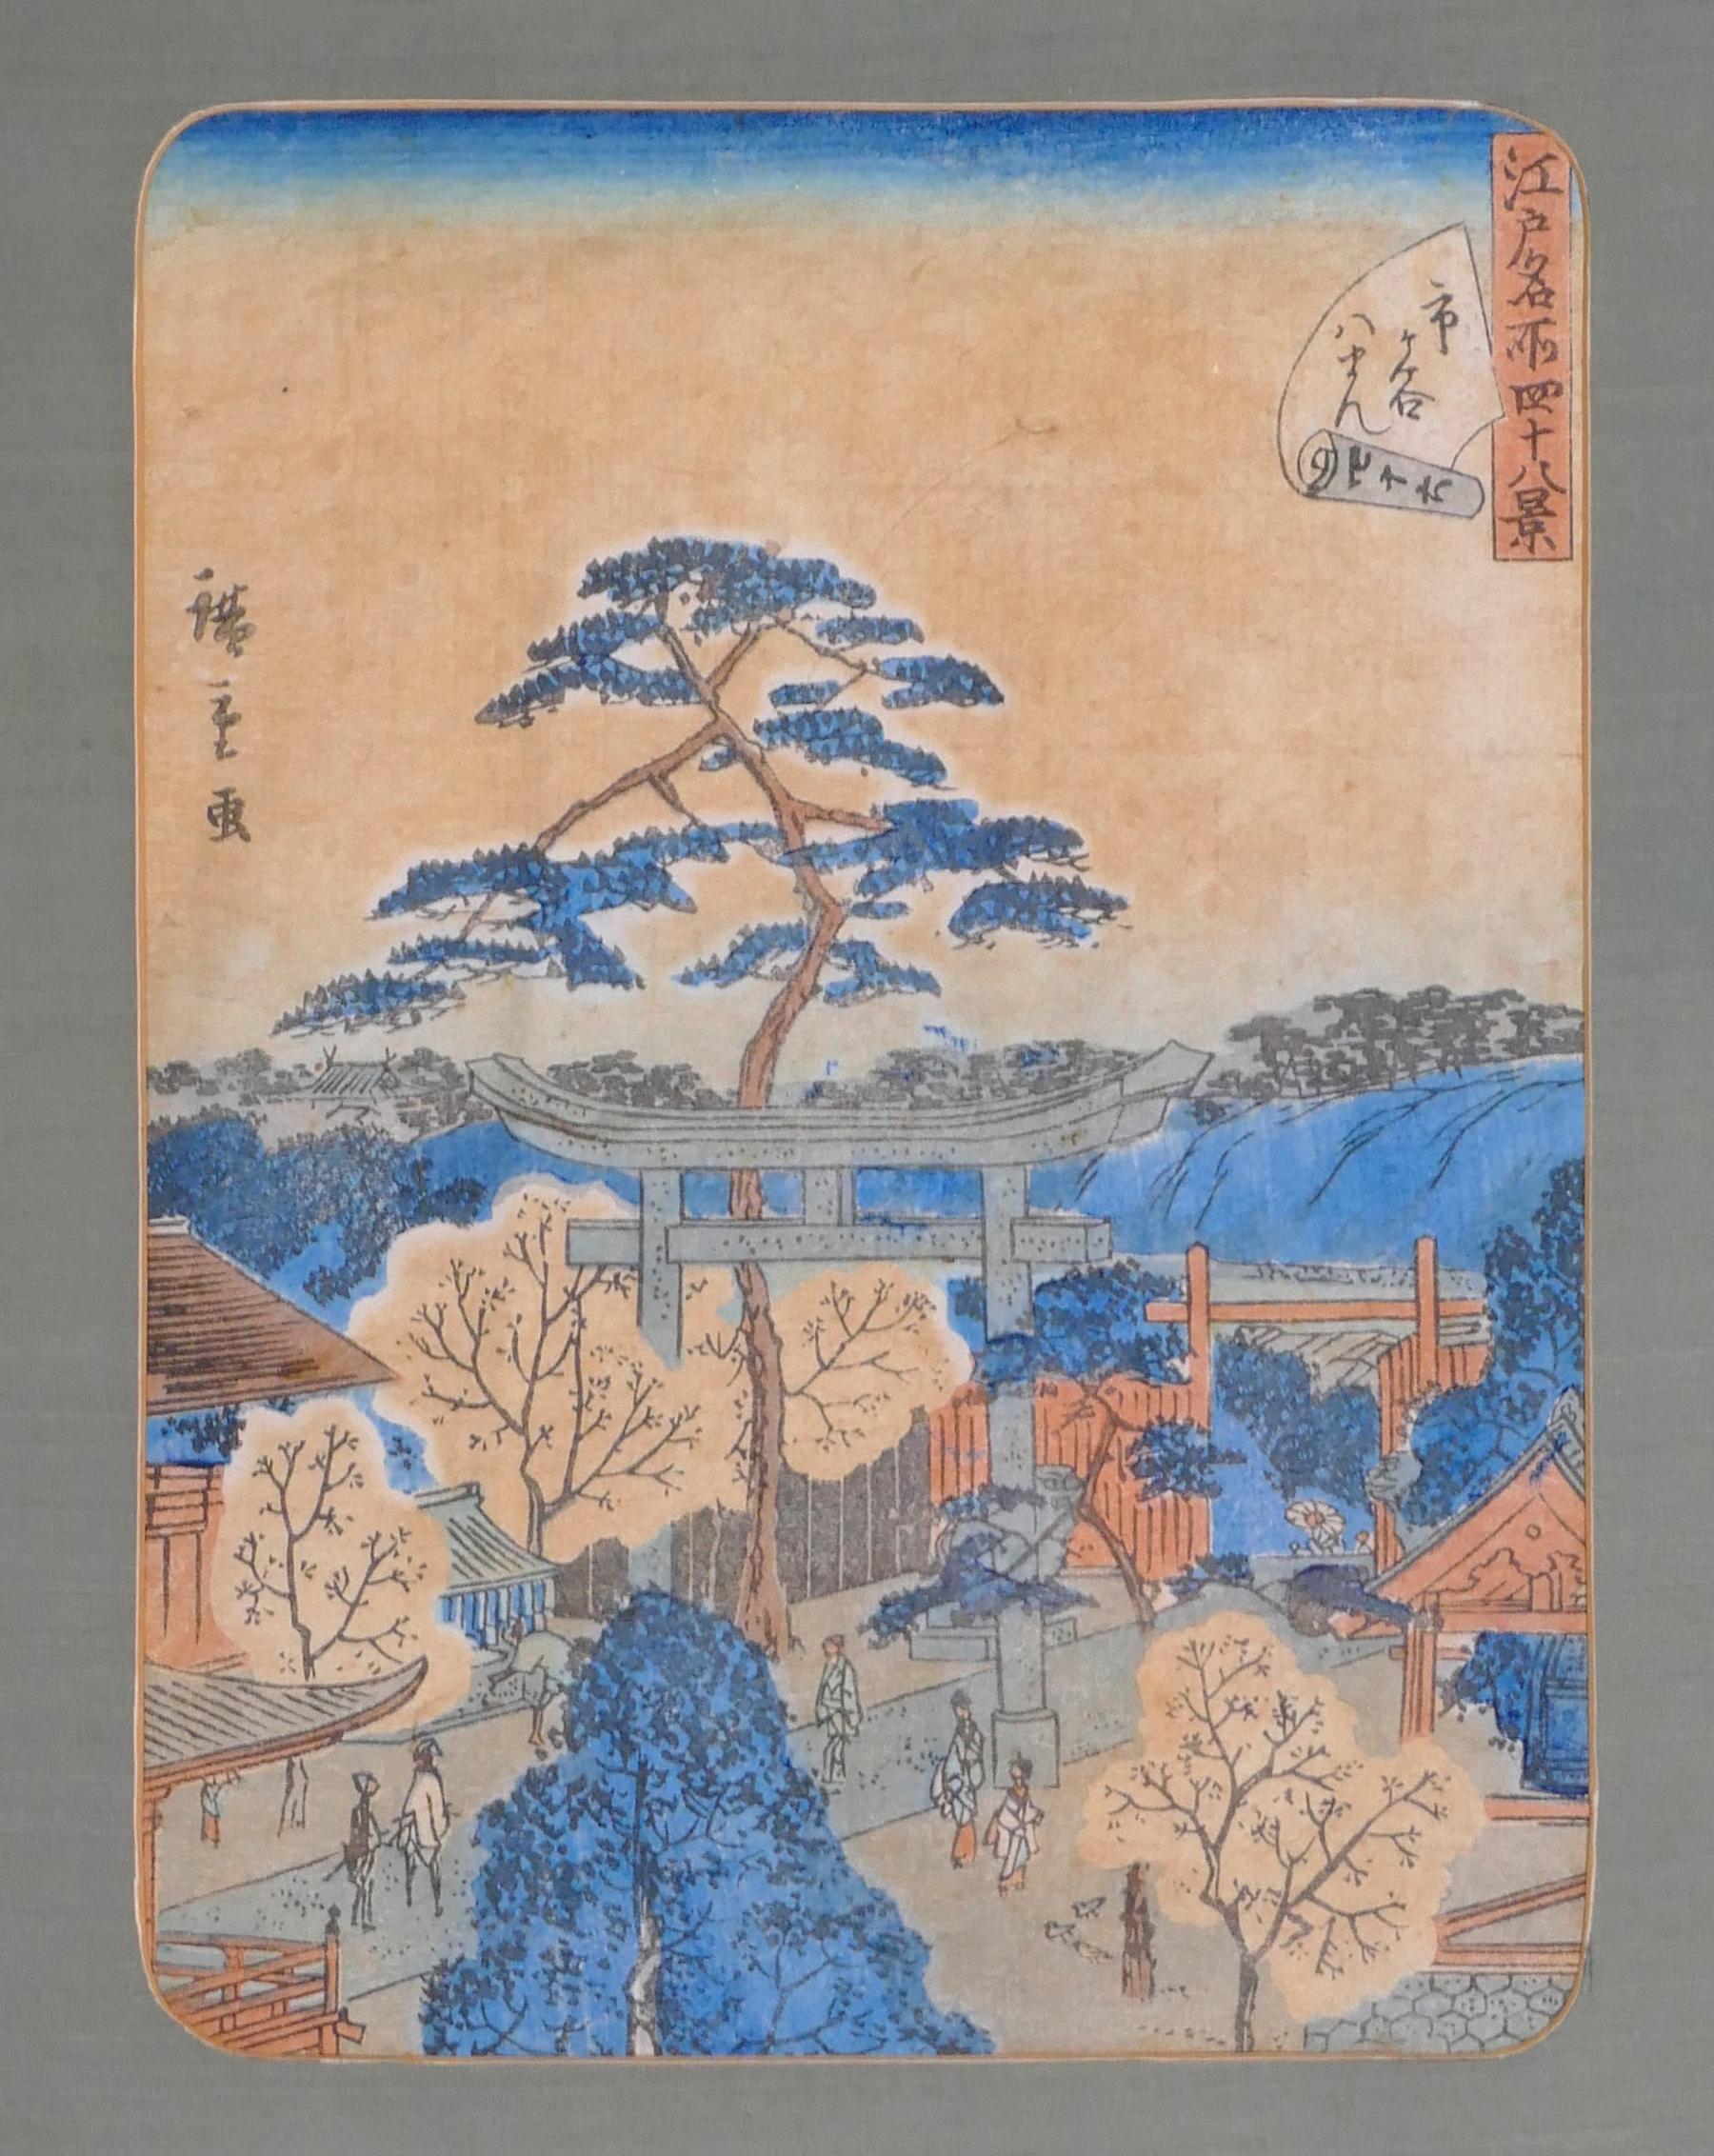 Utagawa Hiroshige II Landscape Print - Japanese View - From 48 Famous views of Edo - 1858-1865 